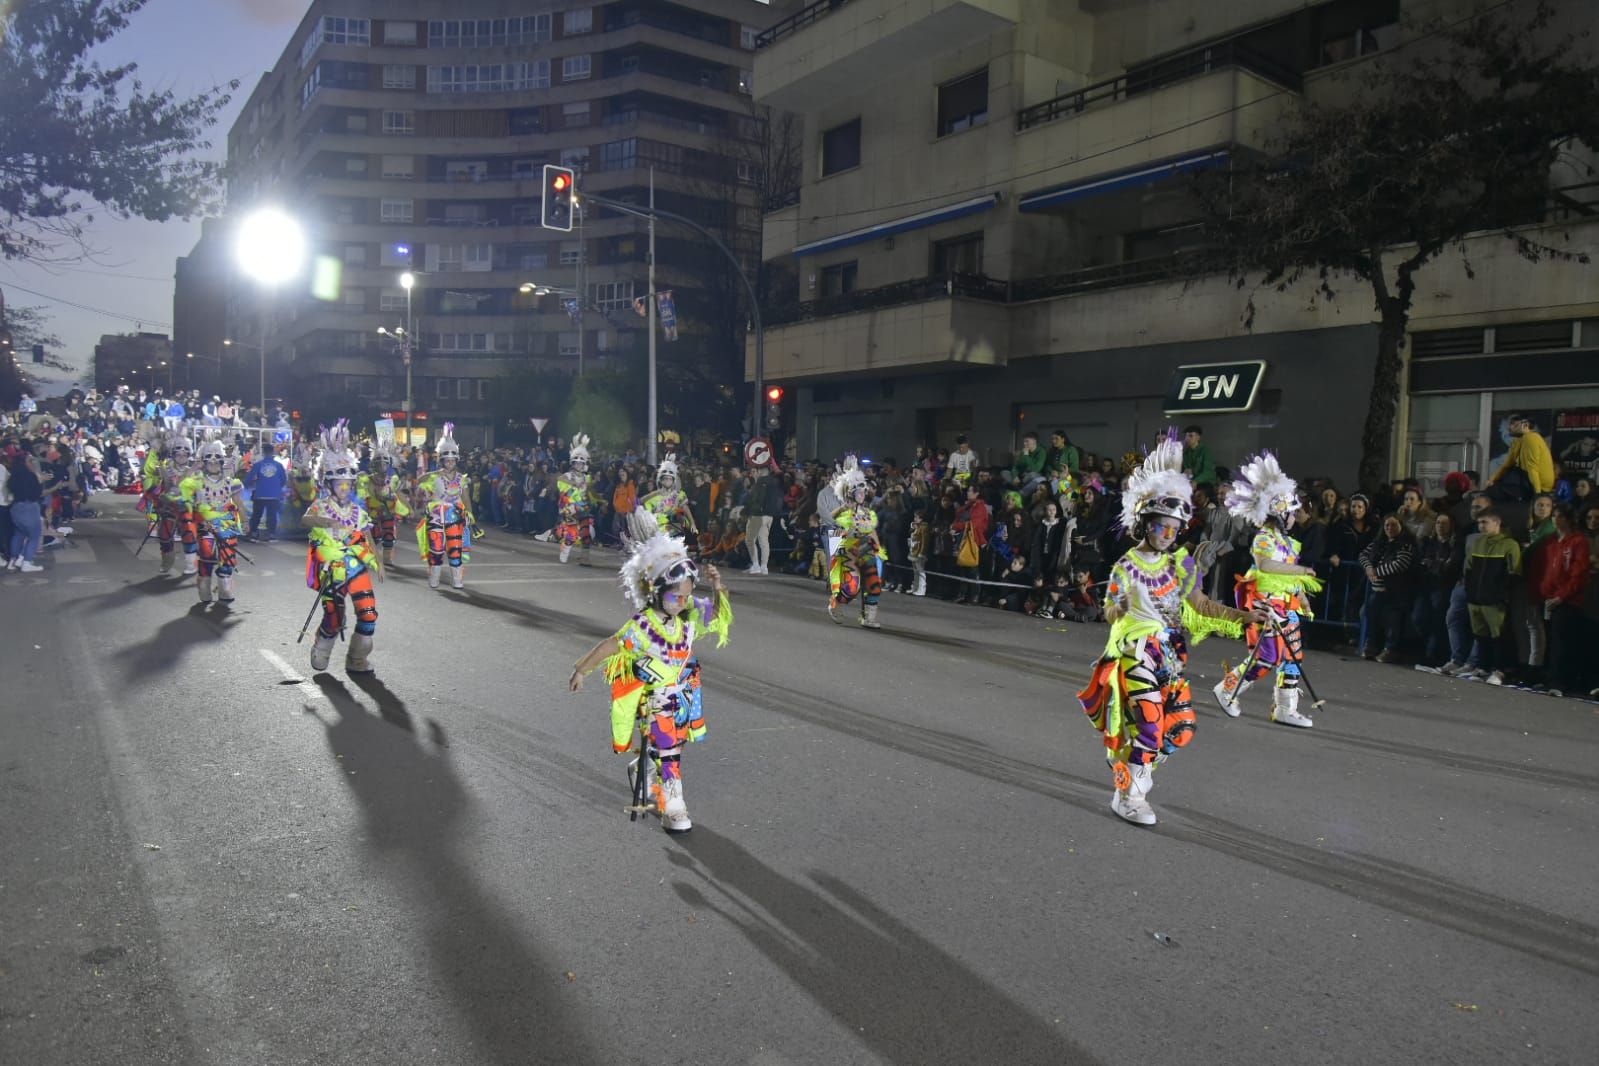 GALERÍA | Mira el desfile de comparsas infantiles de Badajoz